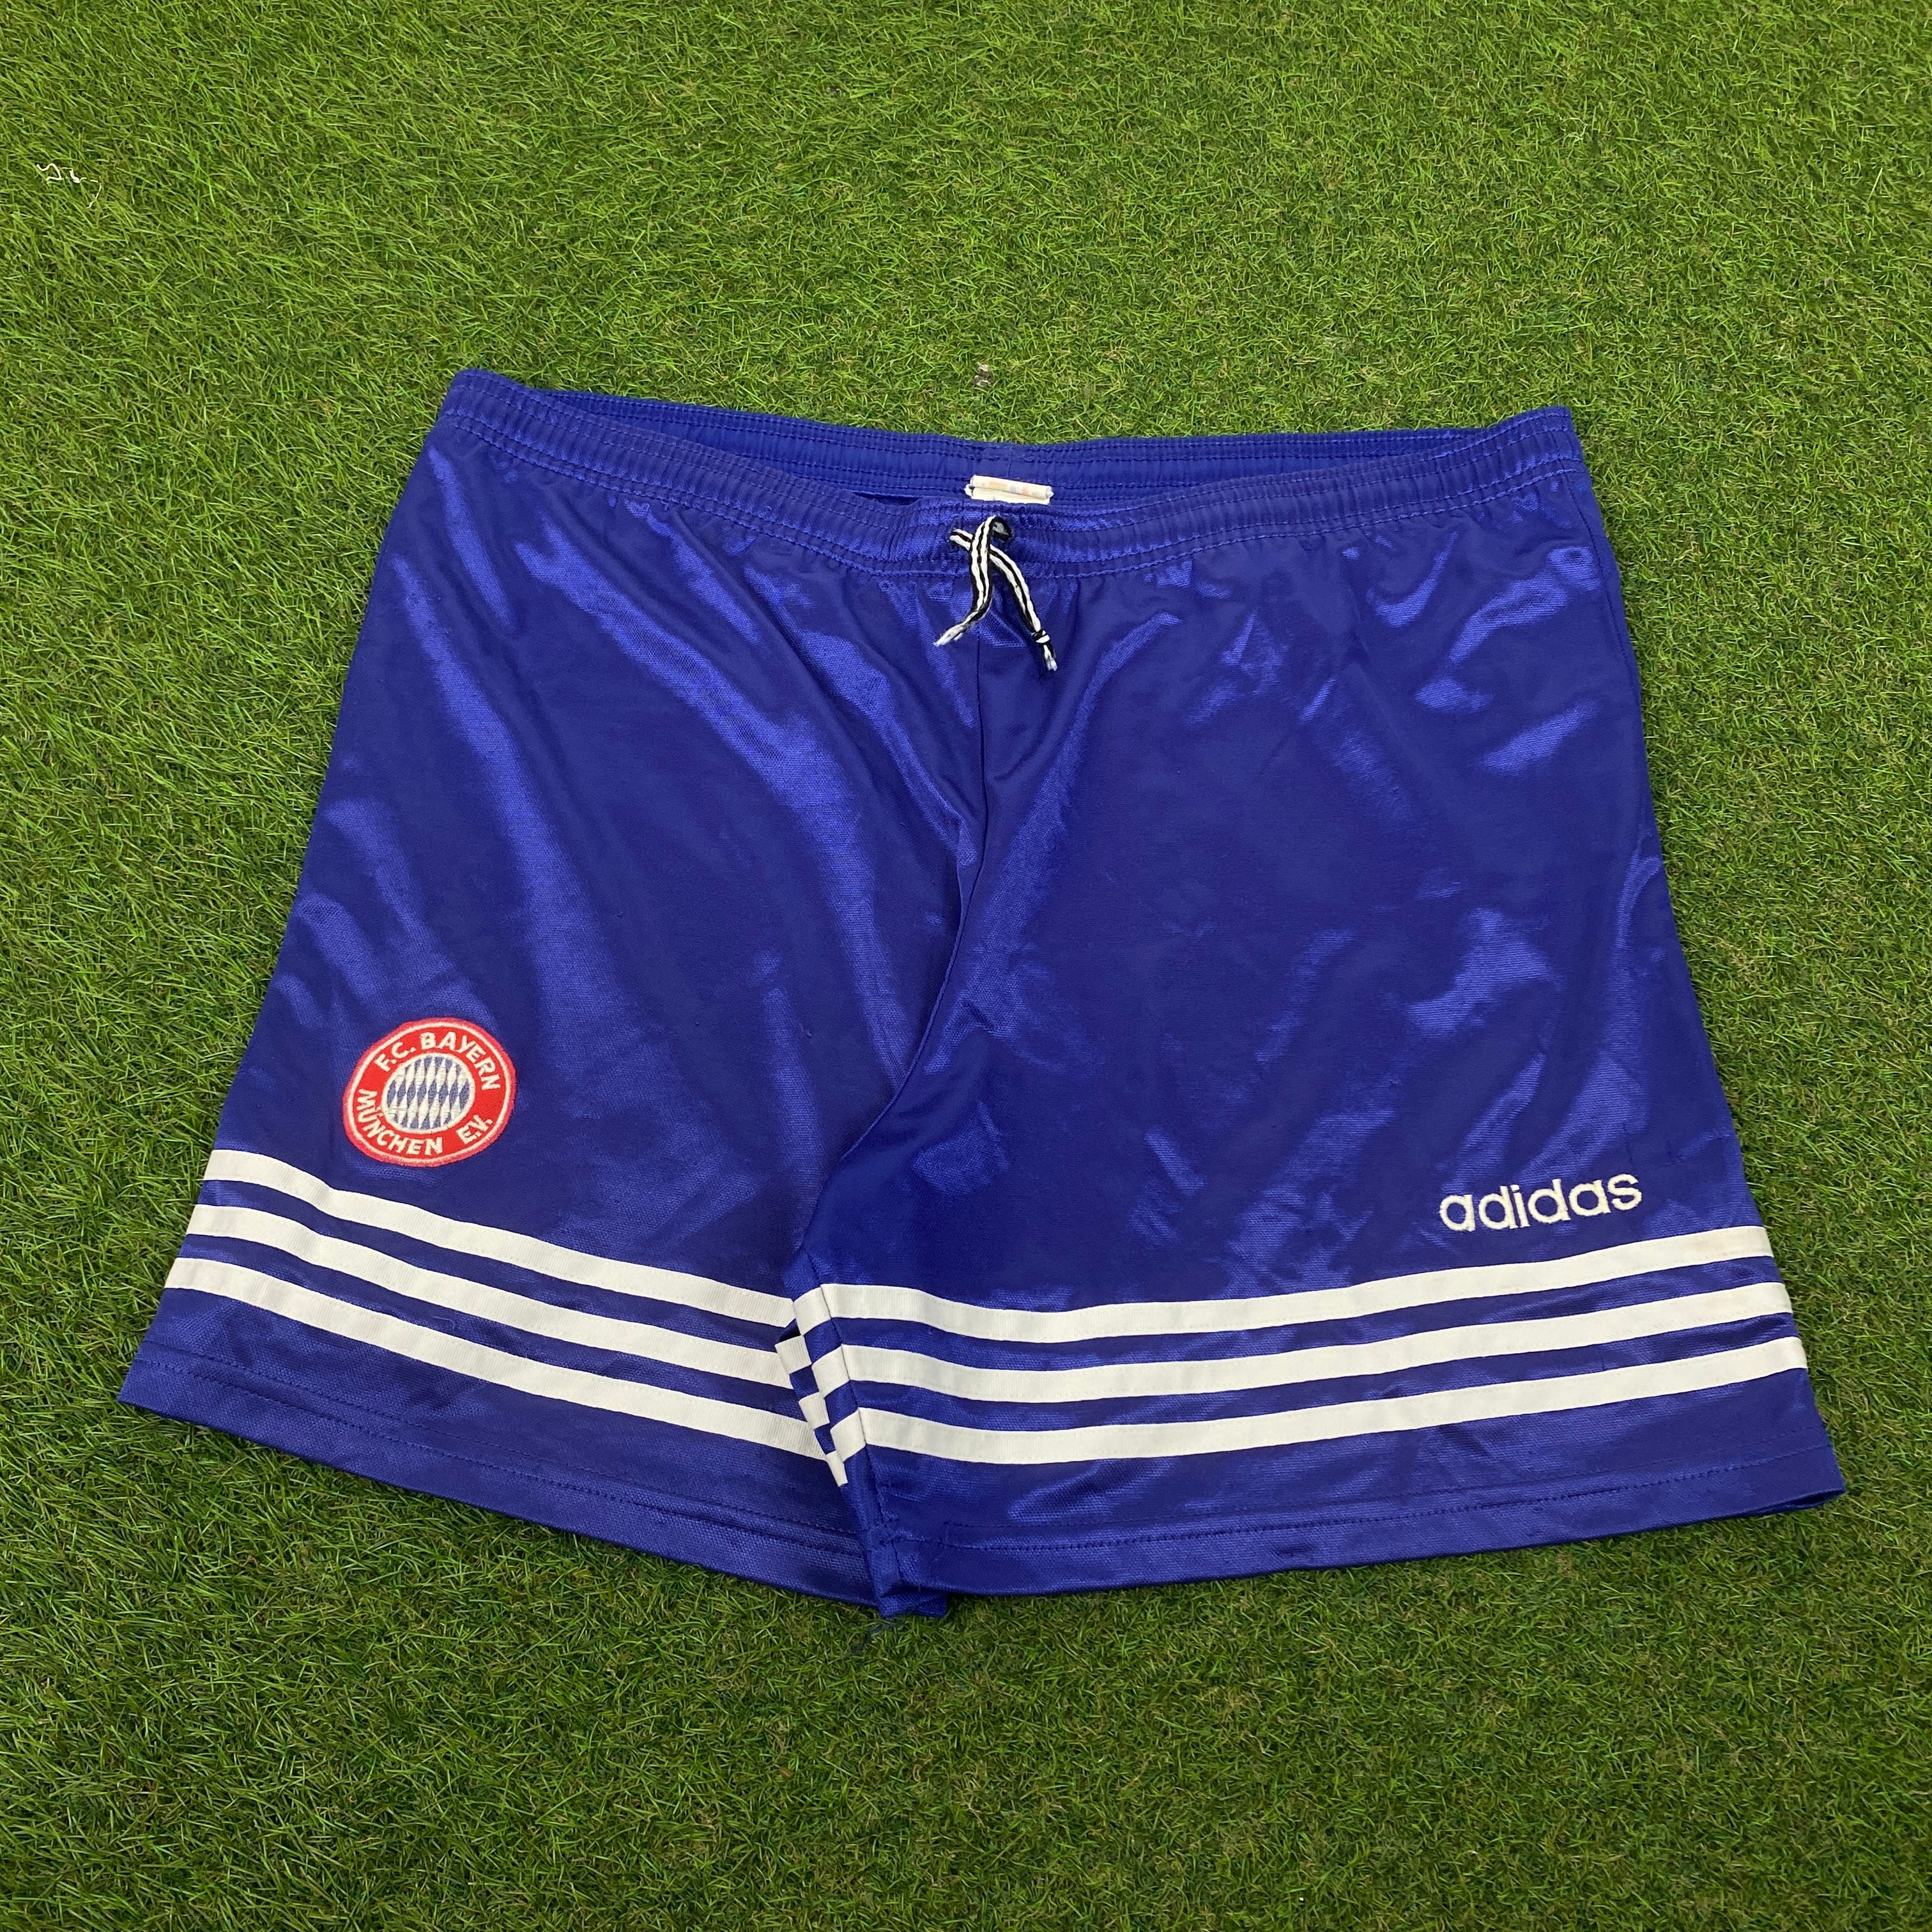 90s Adidas Bayern Munich Shorts Blue Medium